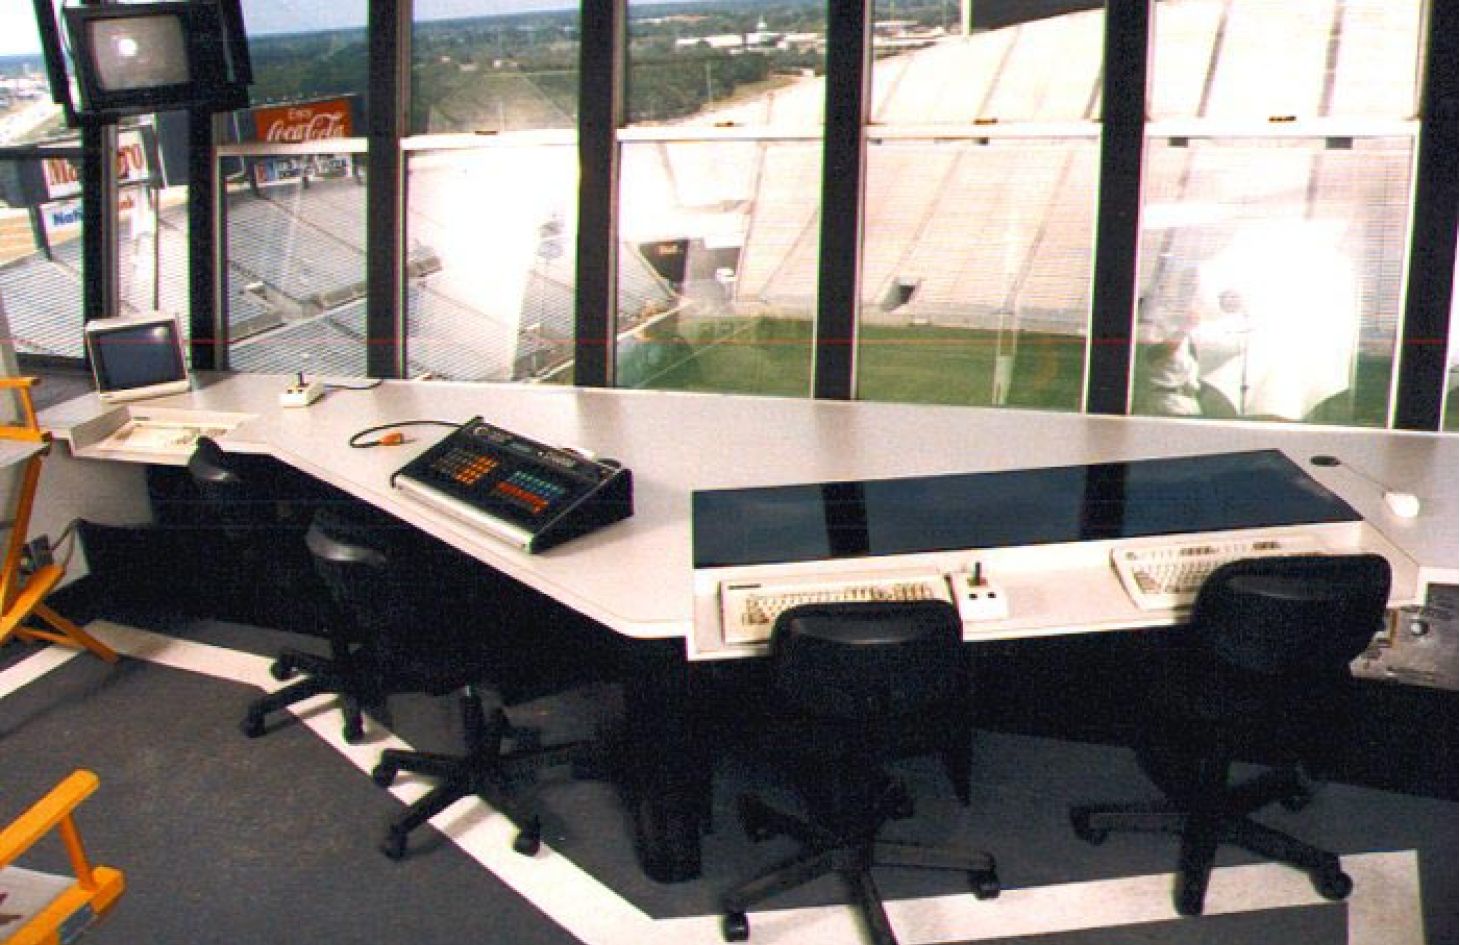 Tampa Stadium console view